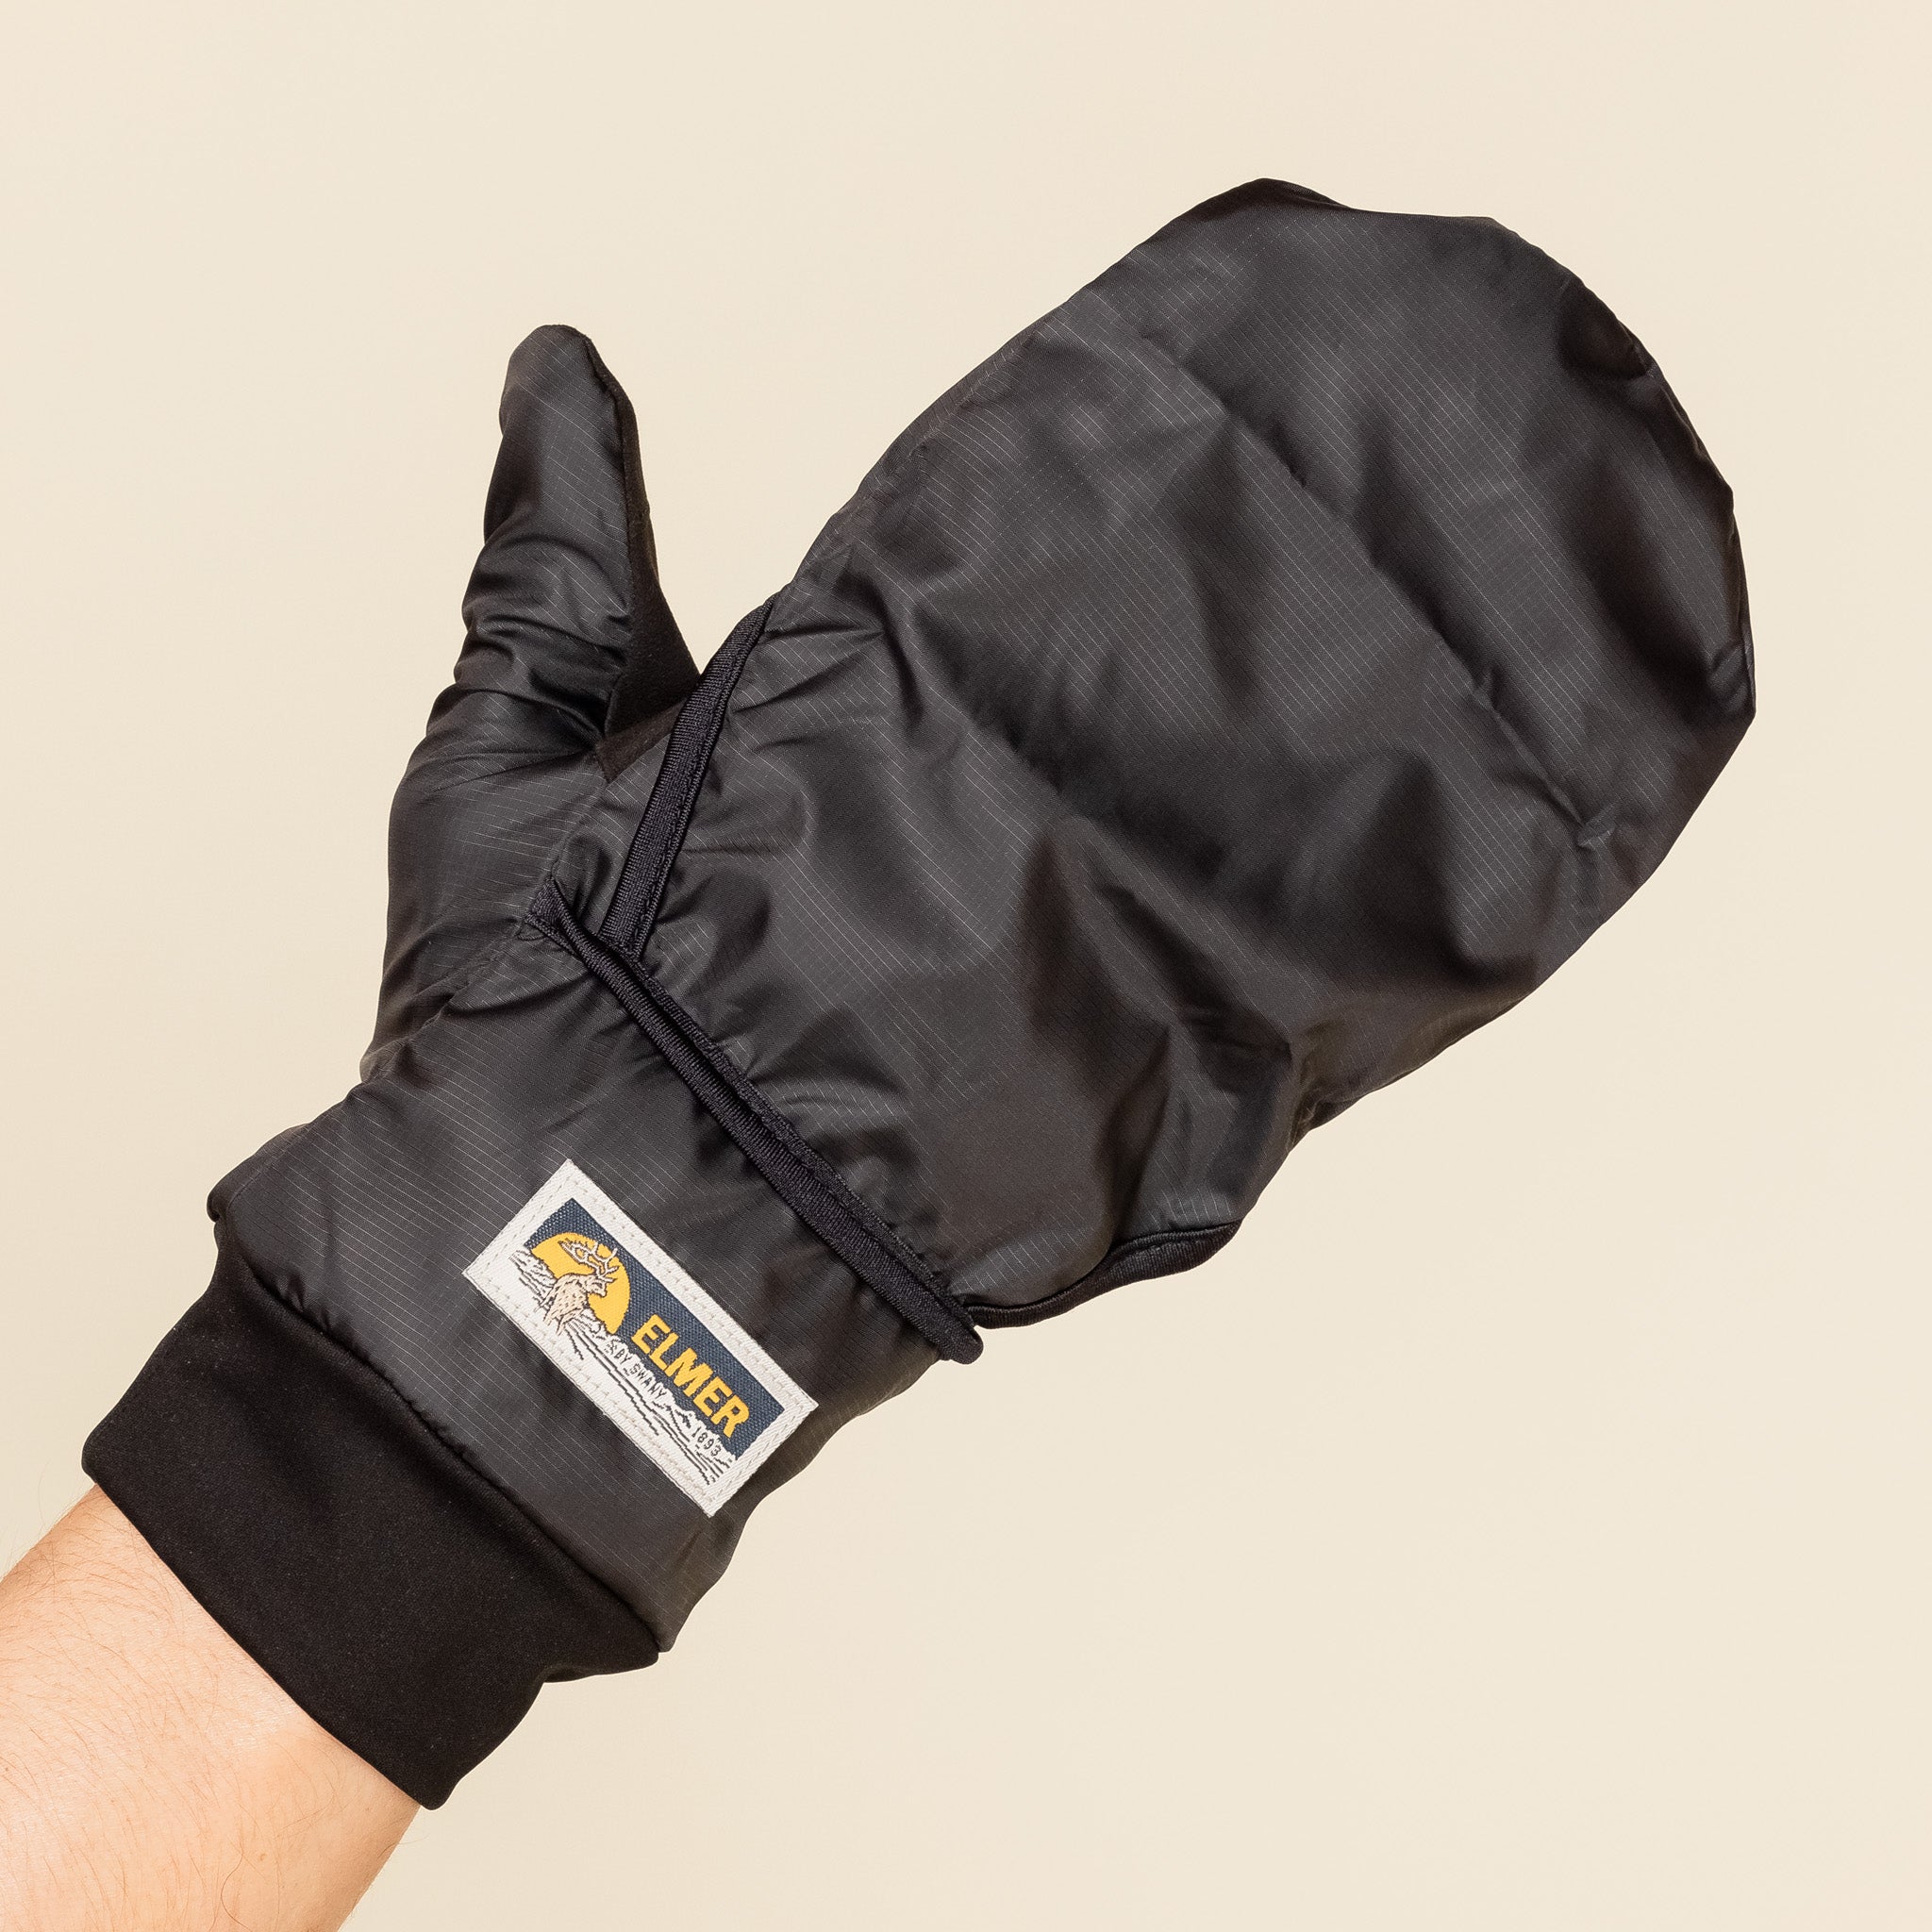 Elmer Gloves - Windstopper City 2 Gloves - Black EM304 "Elmer gloves stockists" "Elmer gloves"